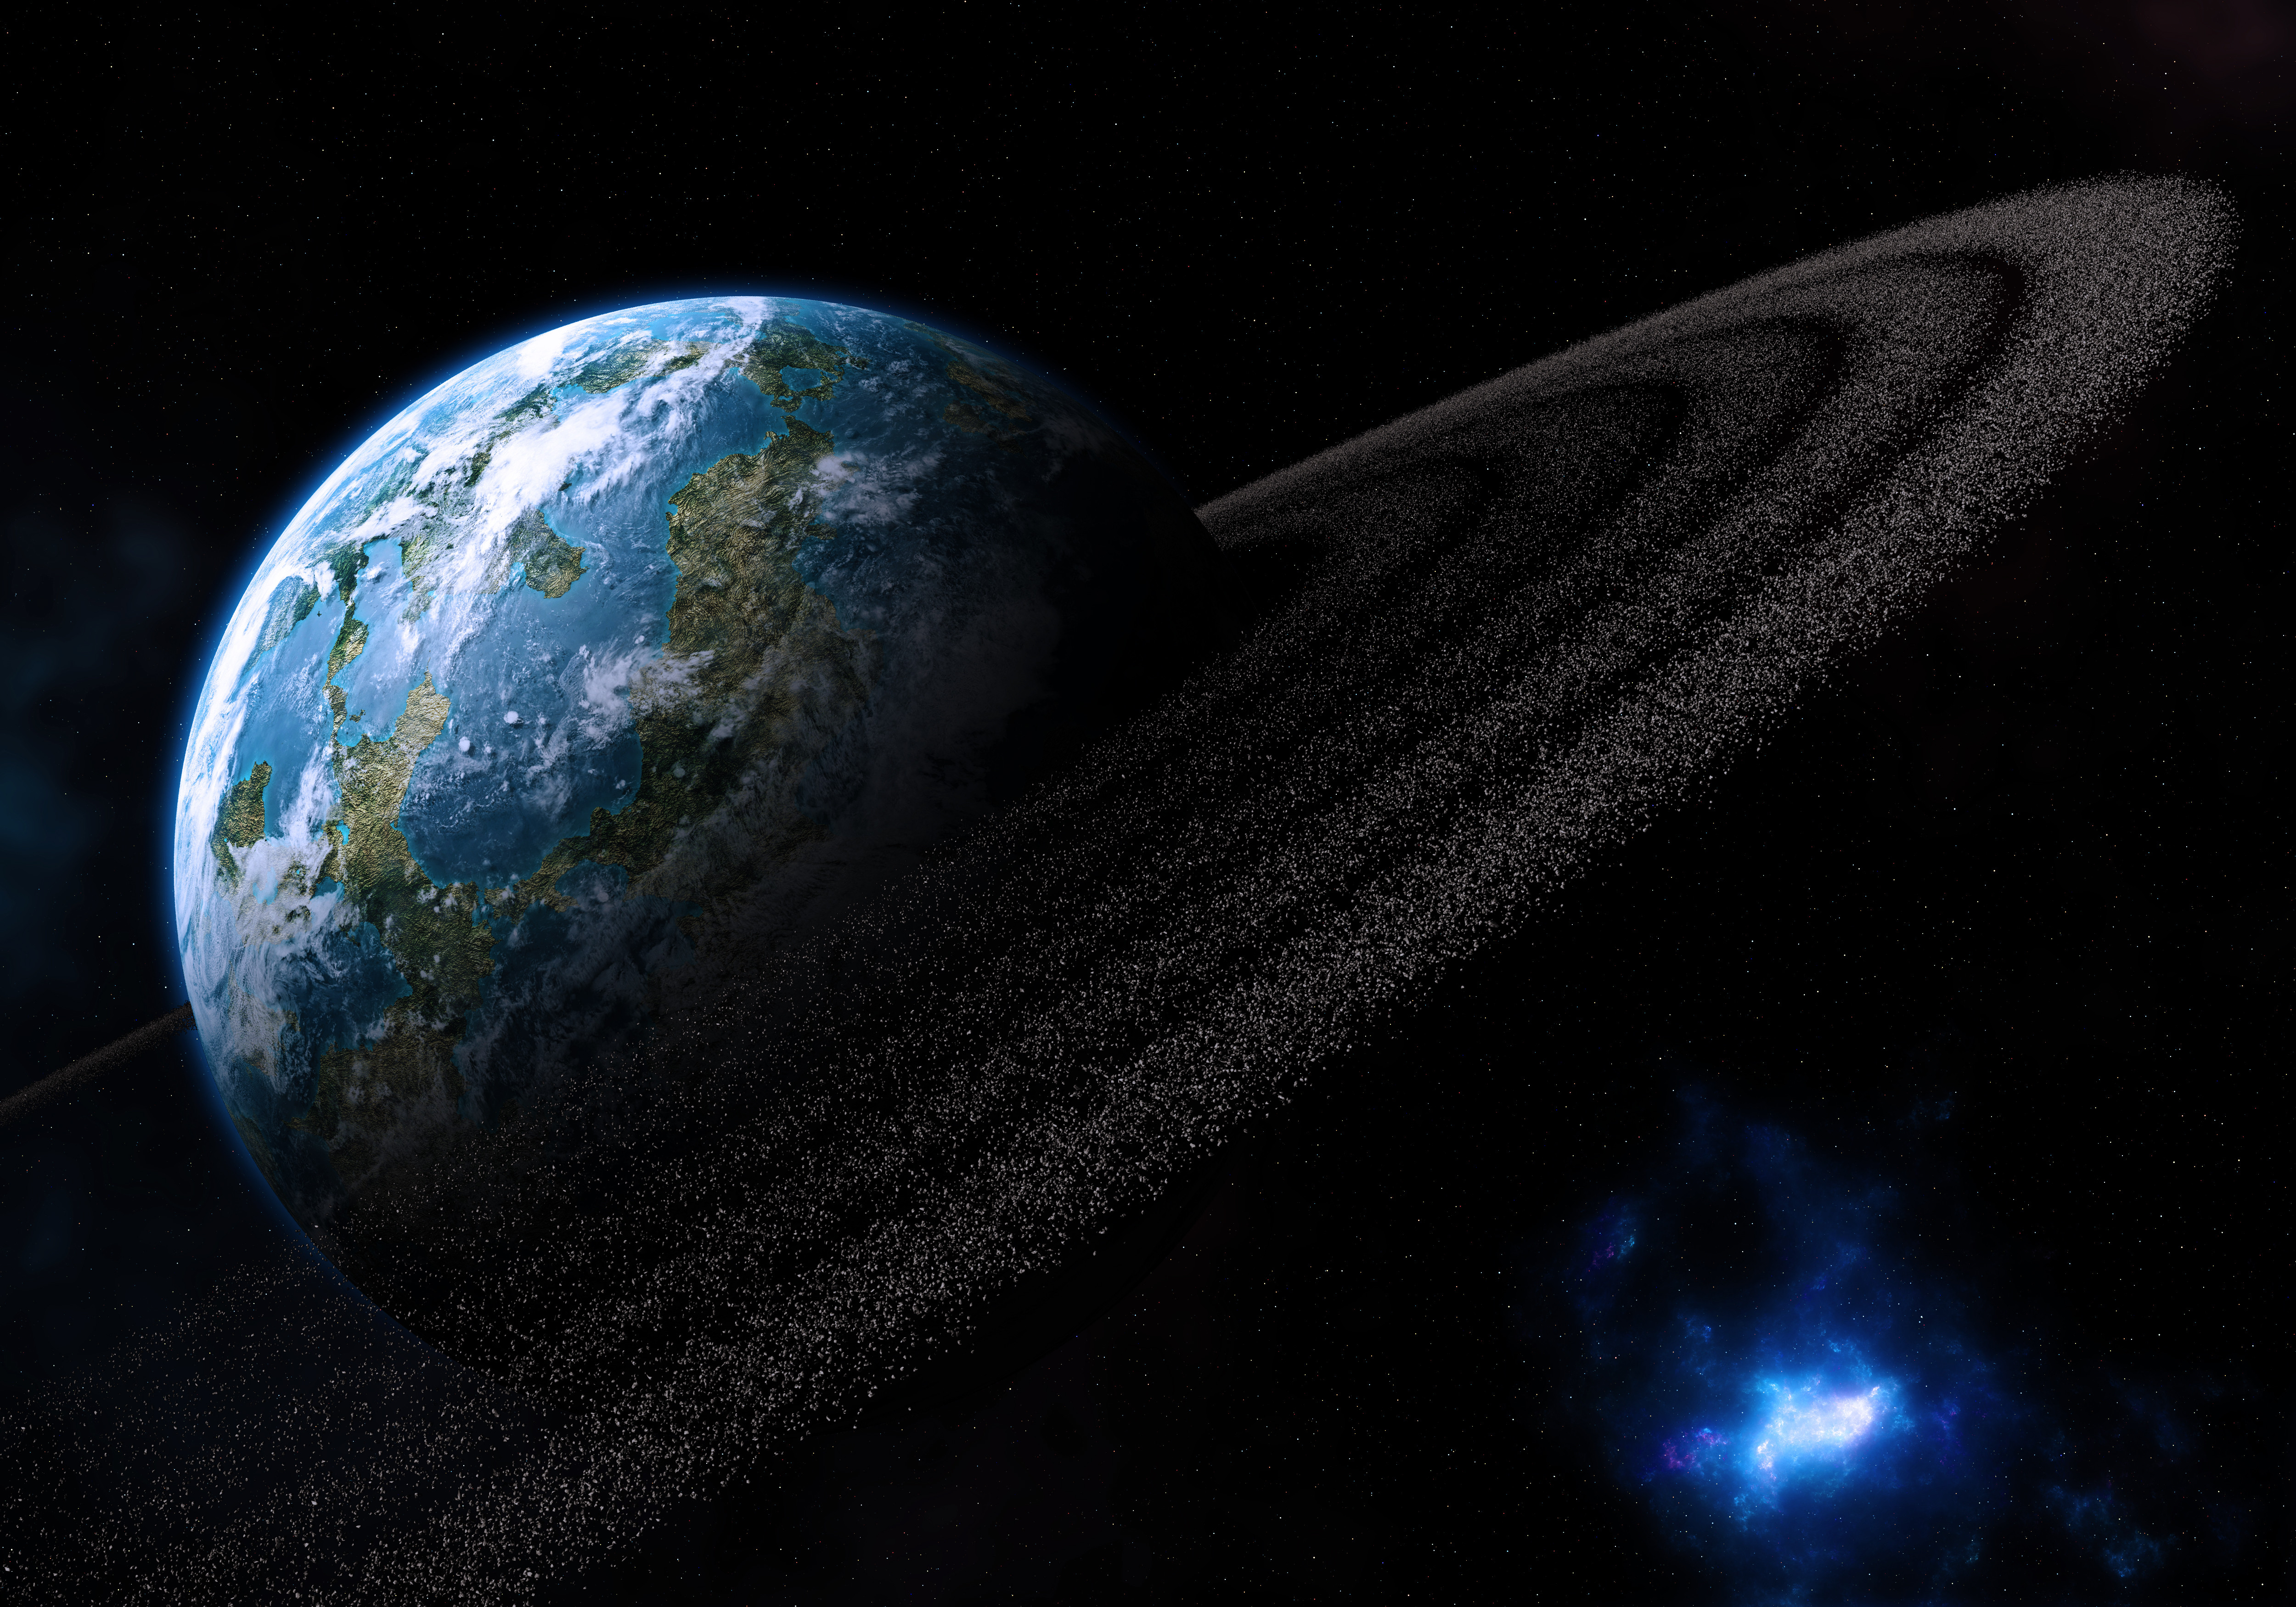 Обои Земли комета картинки на рабочий стол на тему Космос - скачать скачать